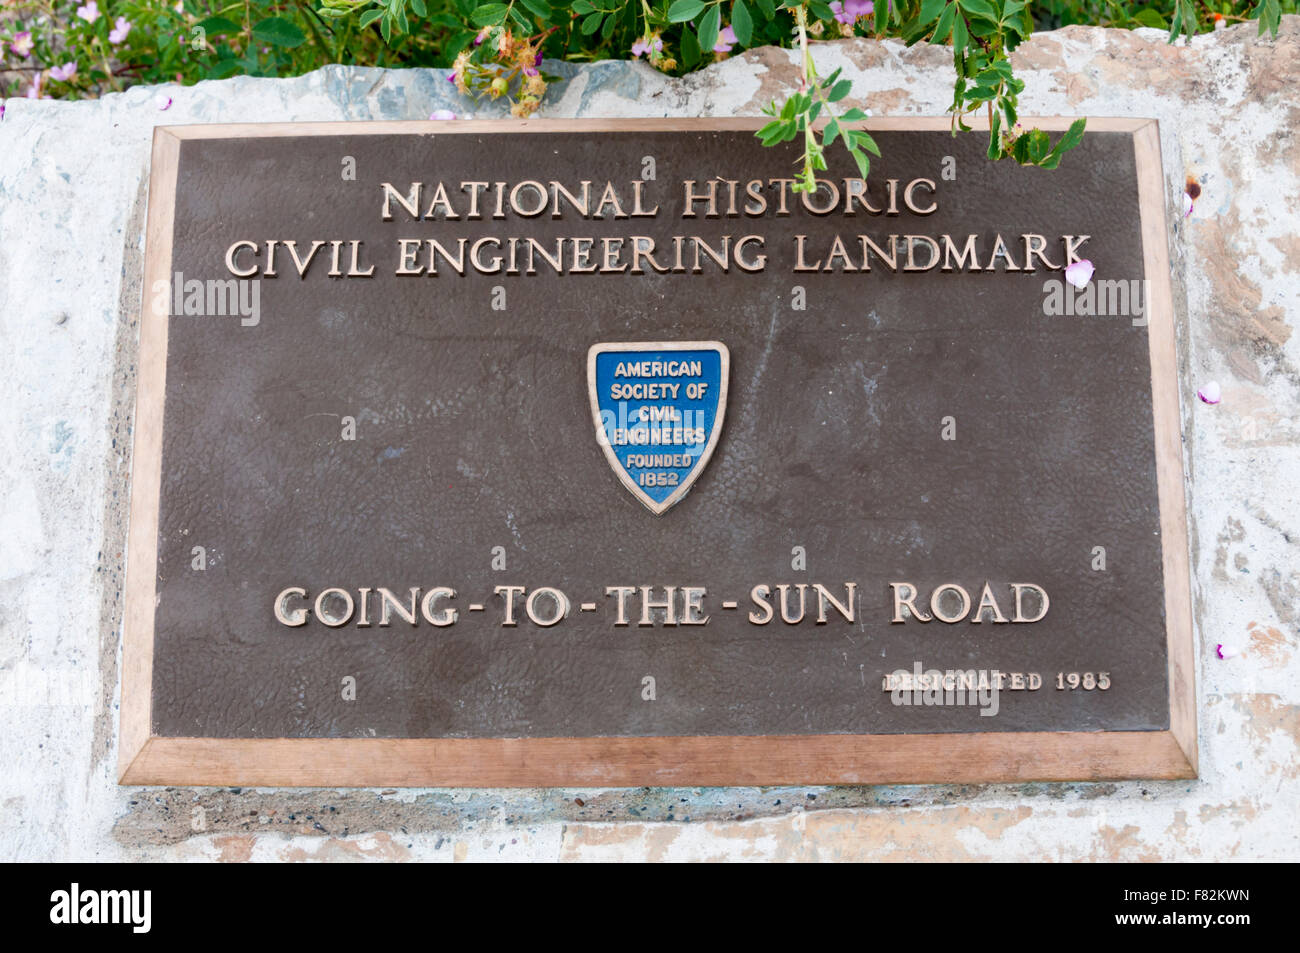 Plaque Aufnahme Bezeichnung der Going-To-The-Sun Road im Glacier National Park als National Historic Civil Engineering Landmark. Stockfoto